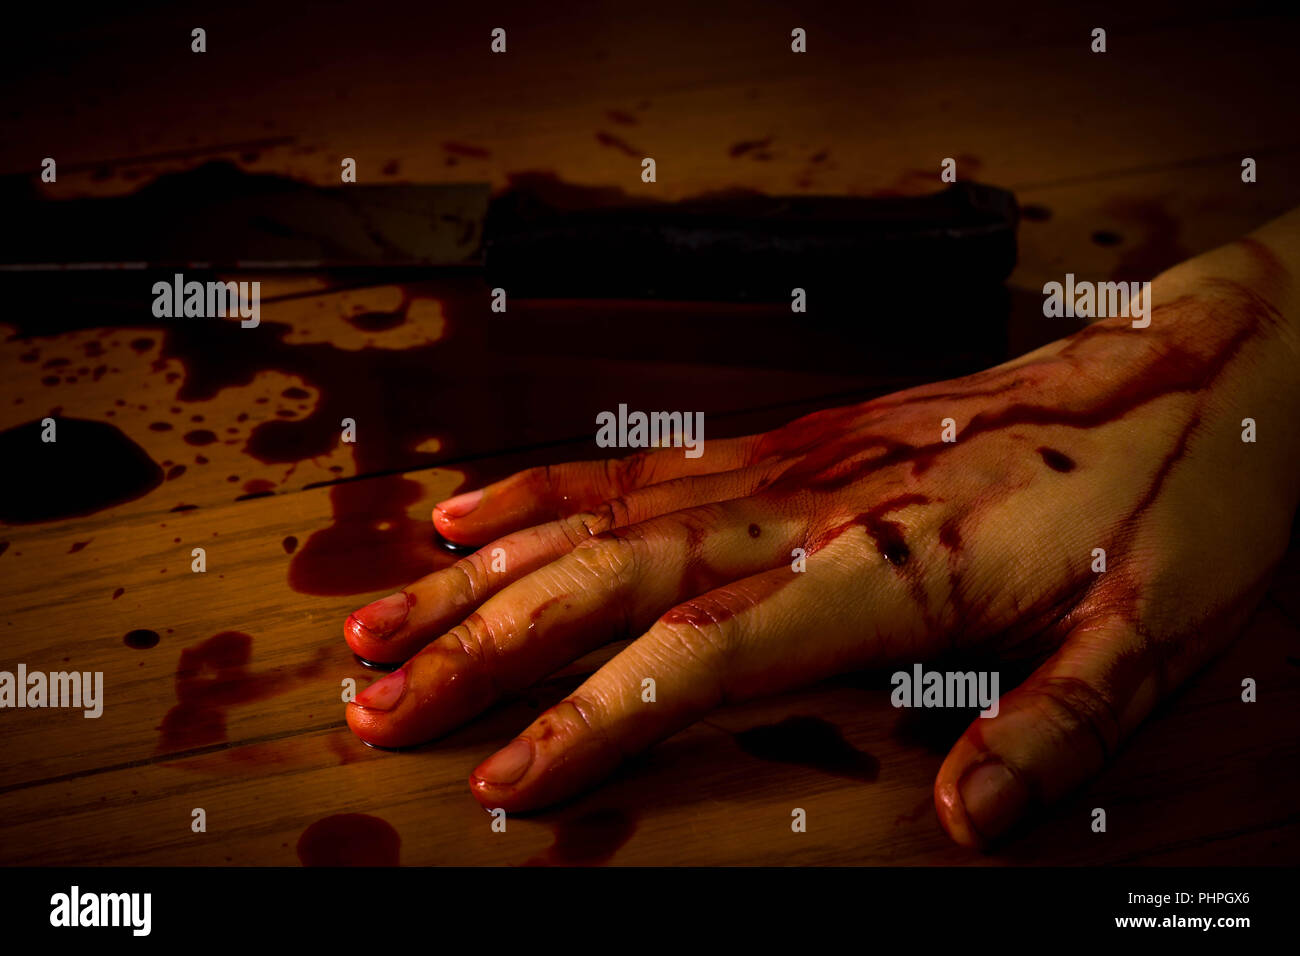 Mord, Selbstmord oder Tatort. Hand einer toten Person getränkt in Blut auf dem Boden mit dem Messer auf dem Hintergrund. Stockfoto